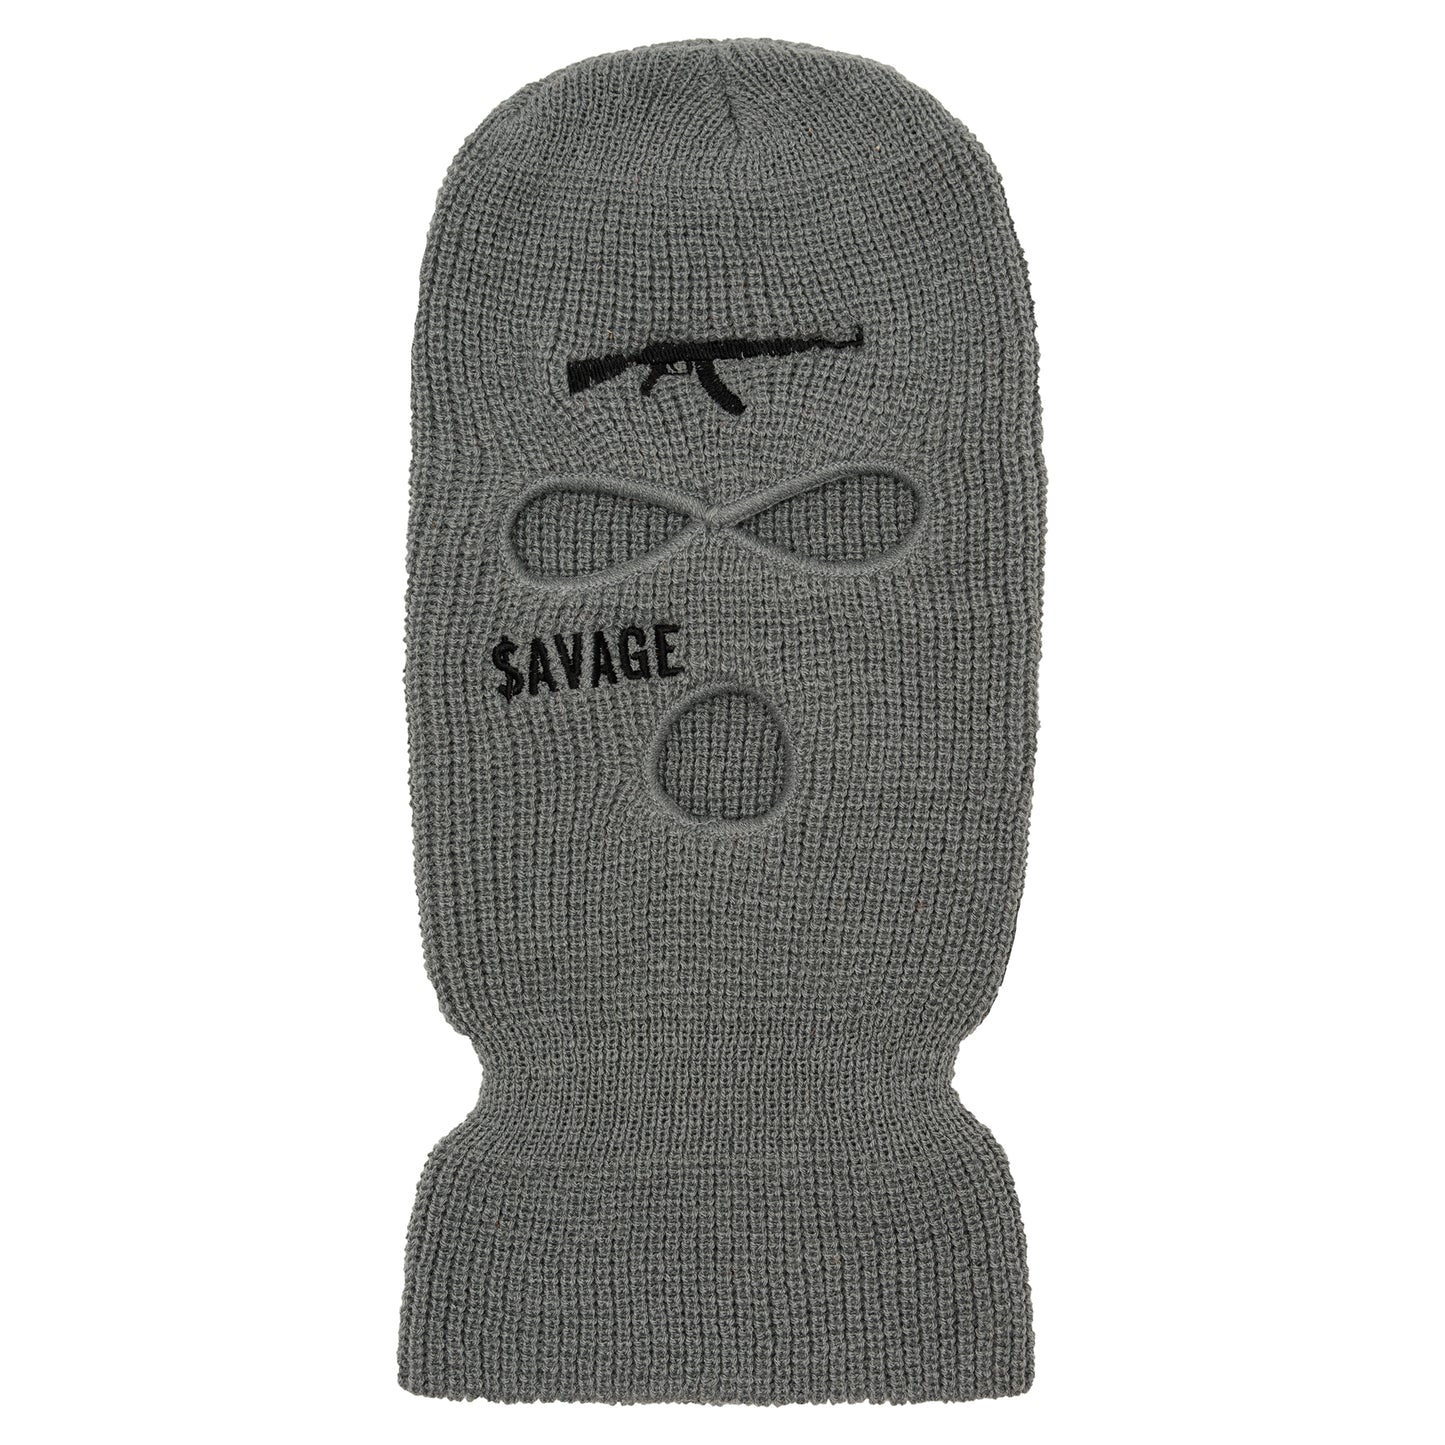 $AVAGE Ski Mask